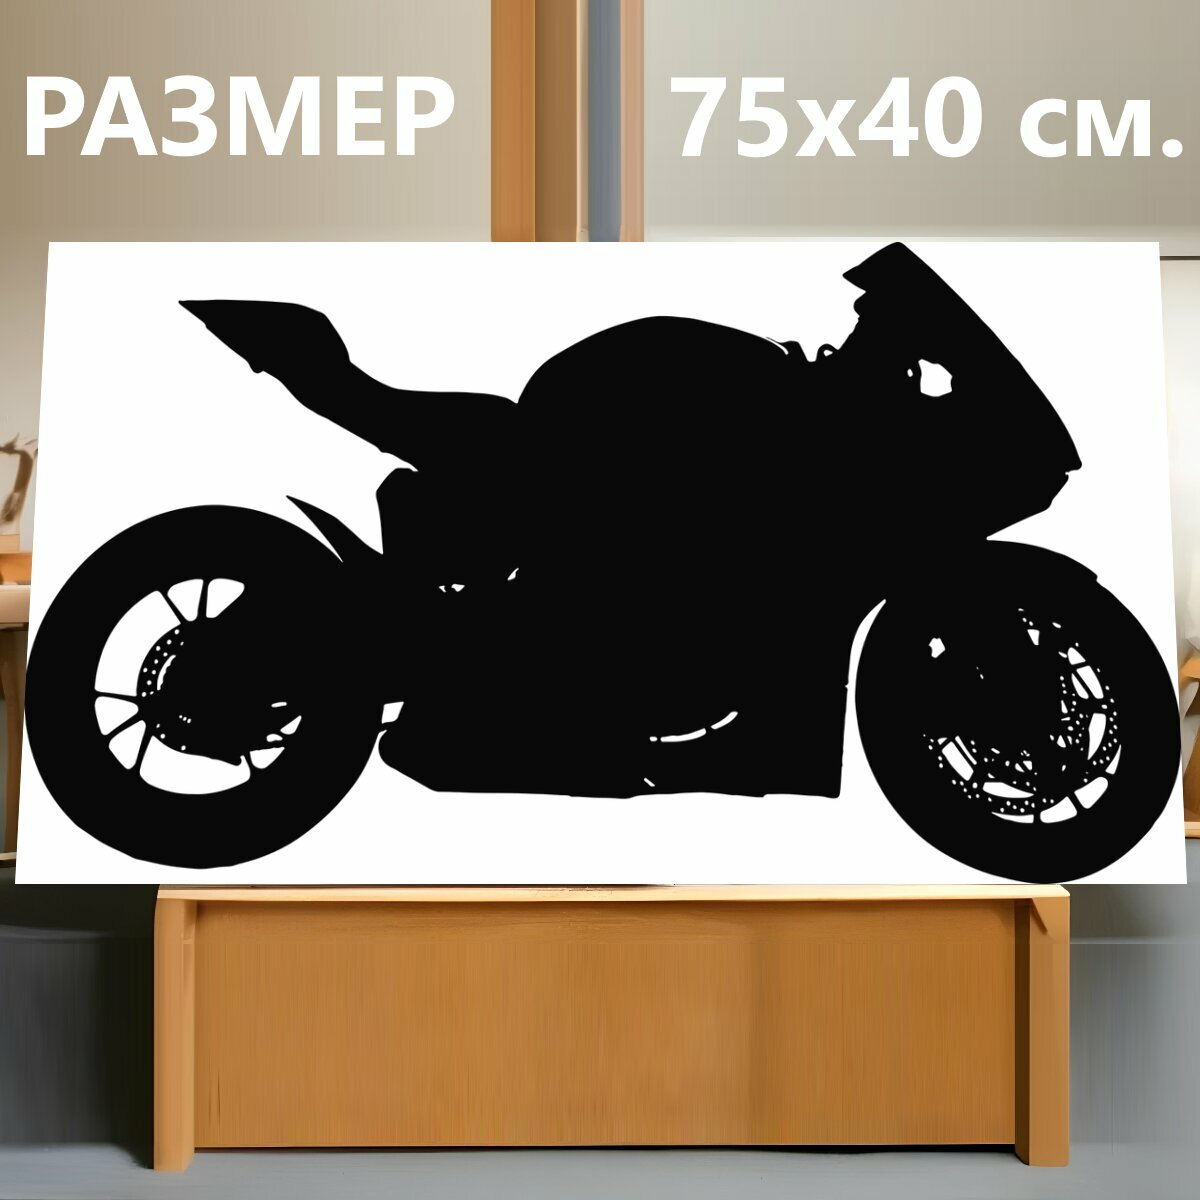 Картина на холсте "Мотоцикл, велосипед, измельчитель" на подрамнике 75х40 см. для интерьера